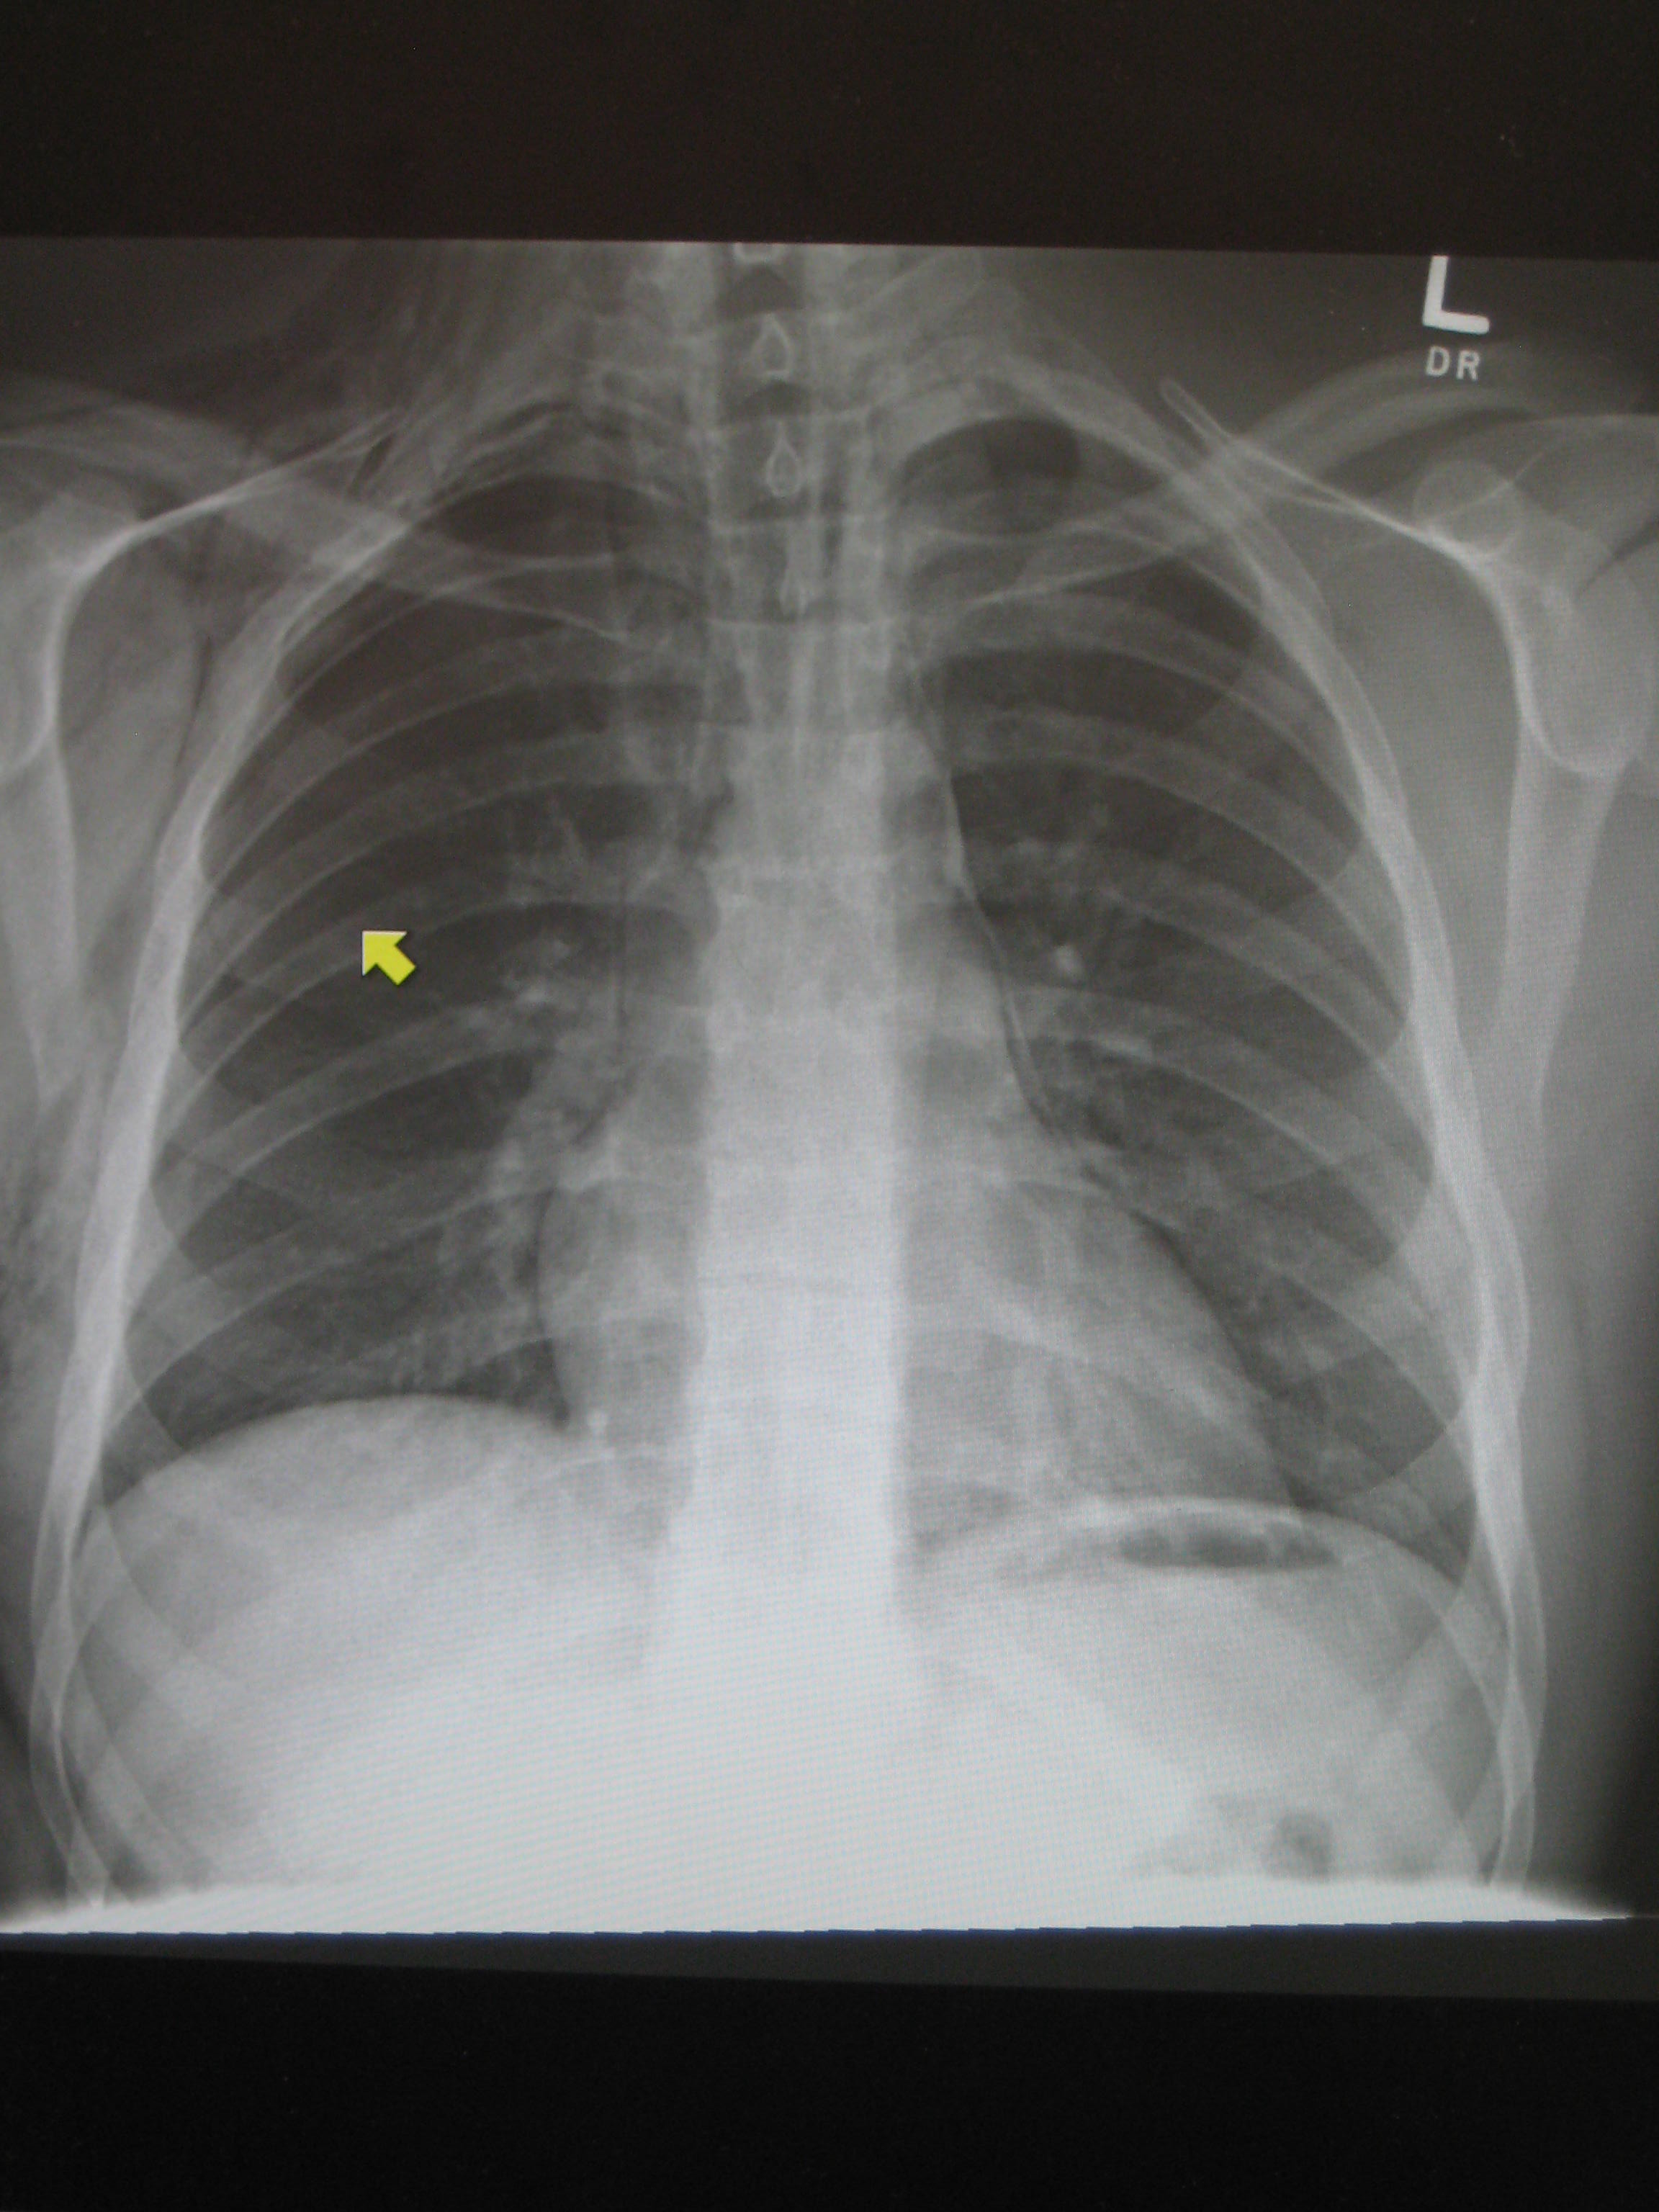 Pneumomediastinum chest x ray - wikidoc